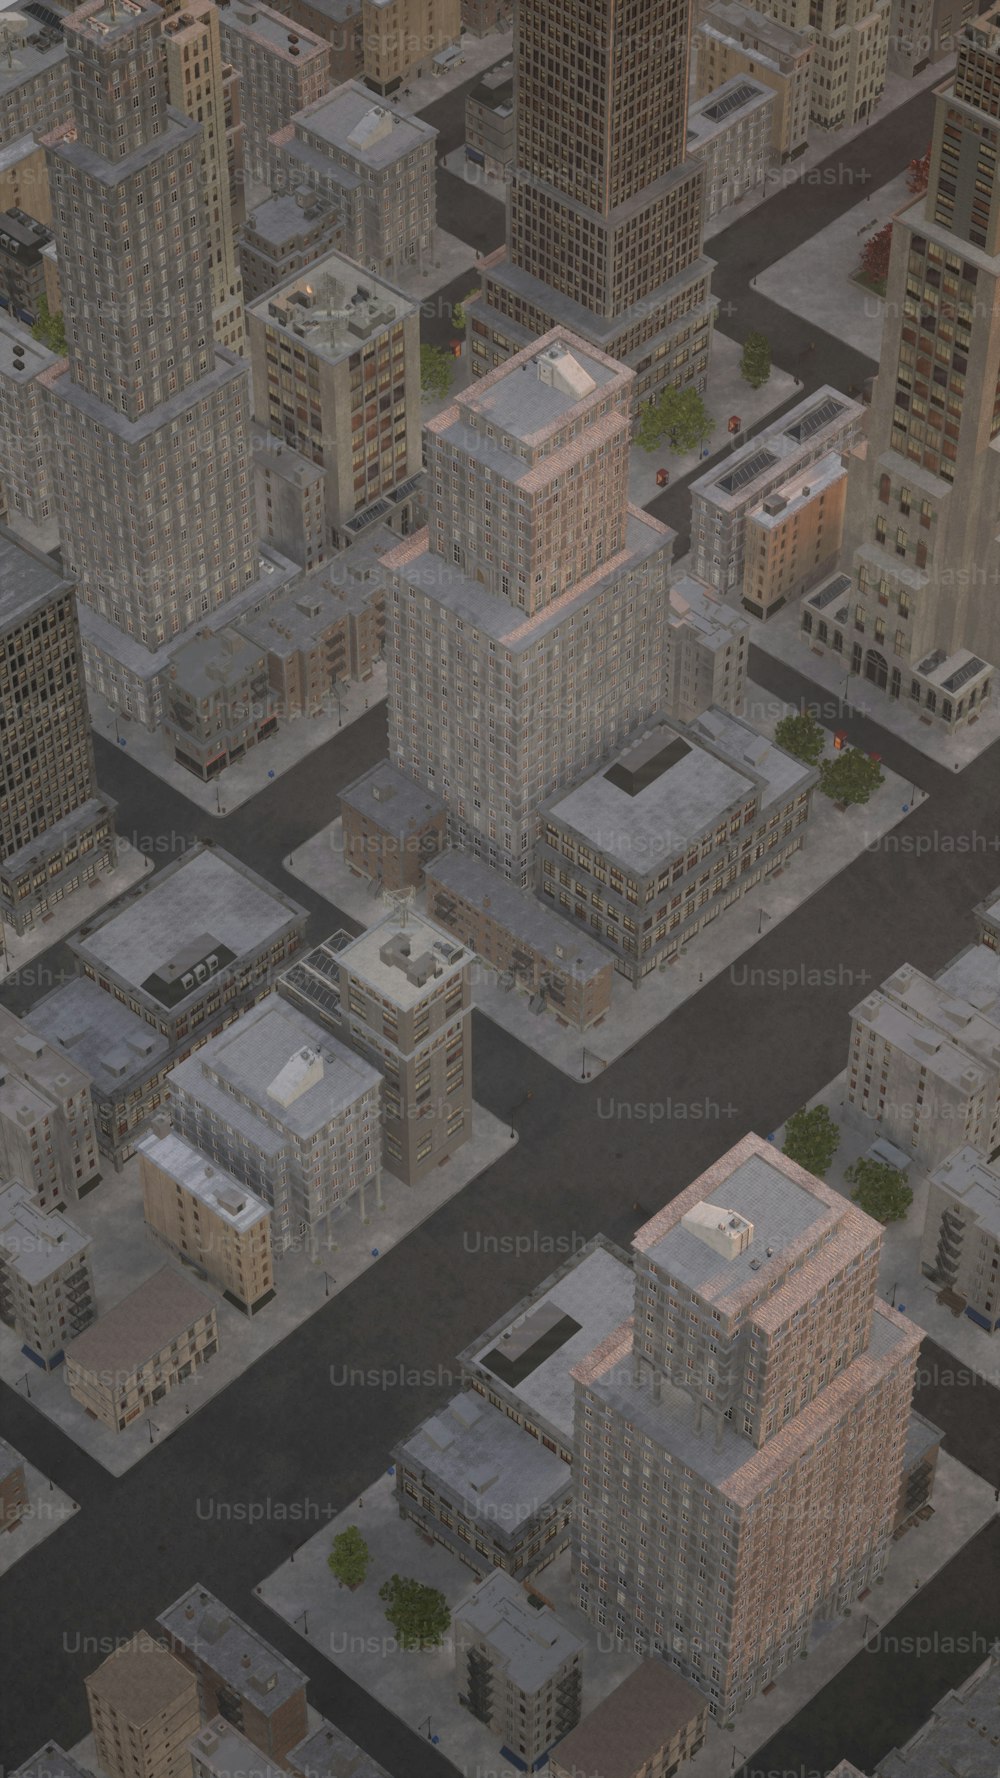 Luftaufnahme einer Stadt mit hohen Gebäuden